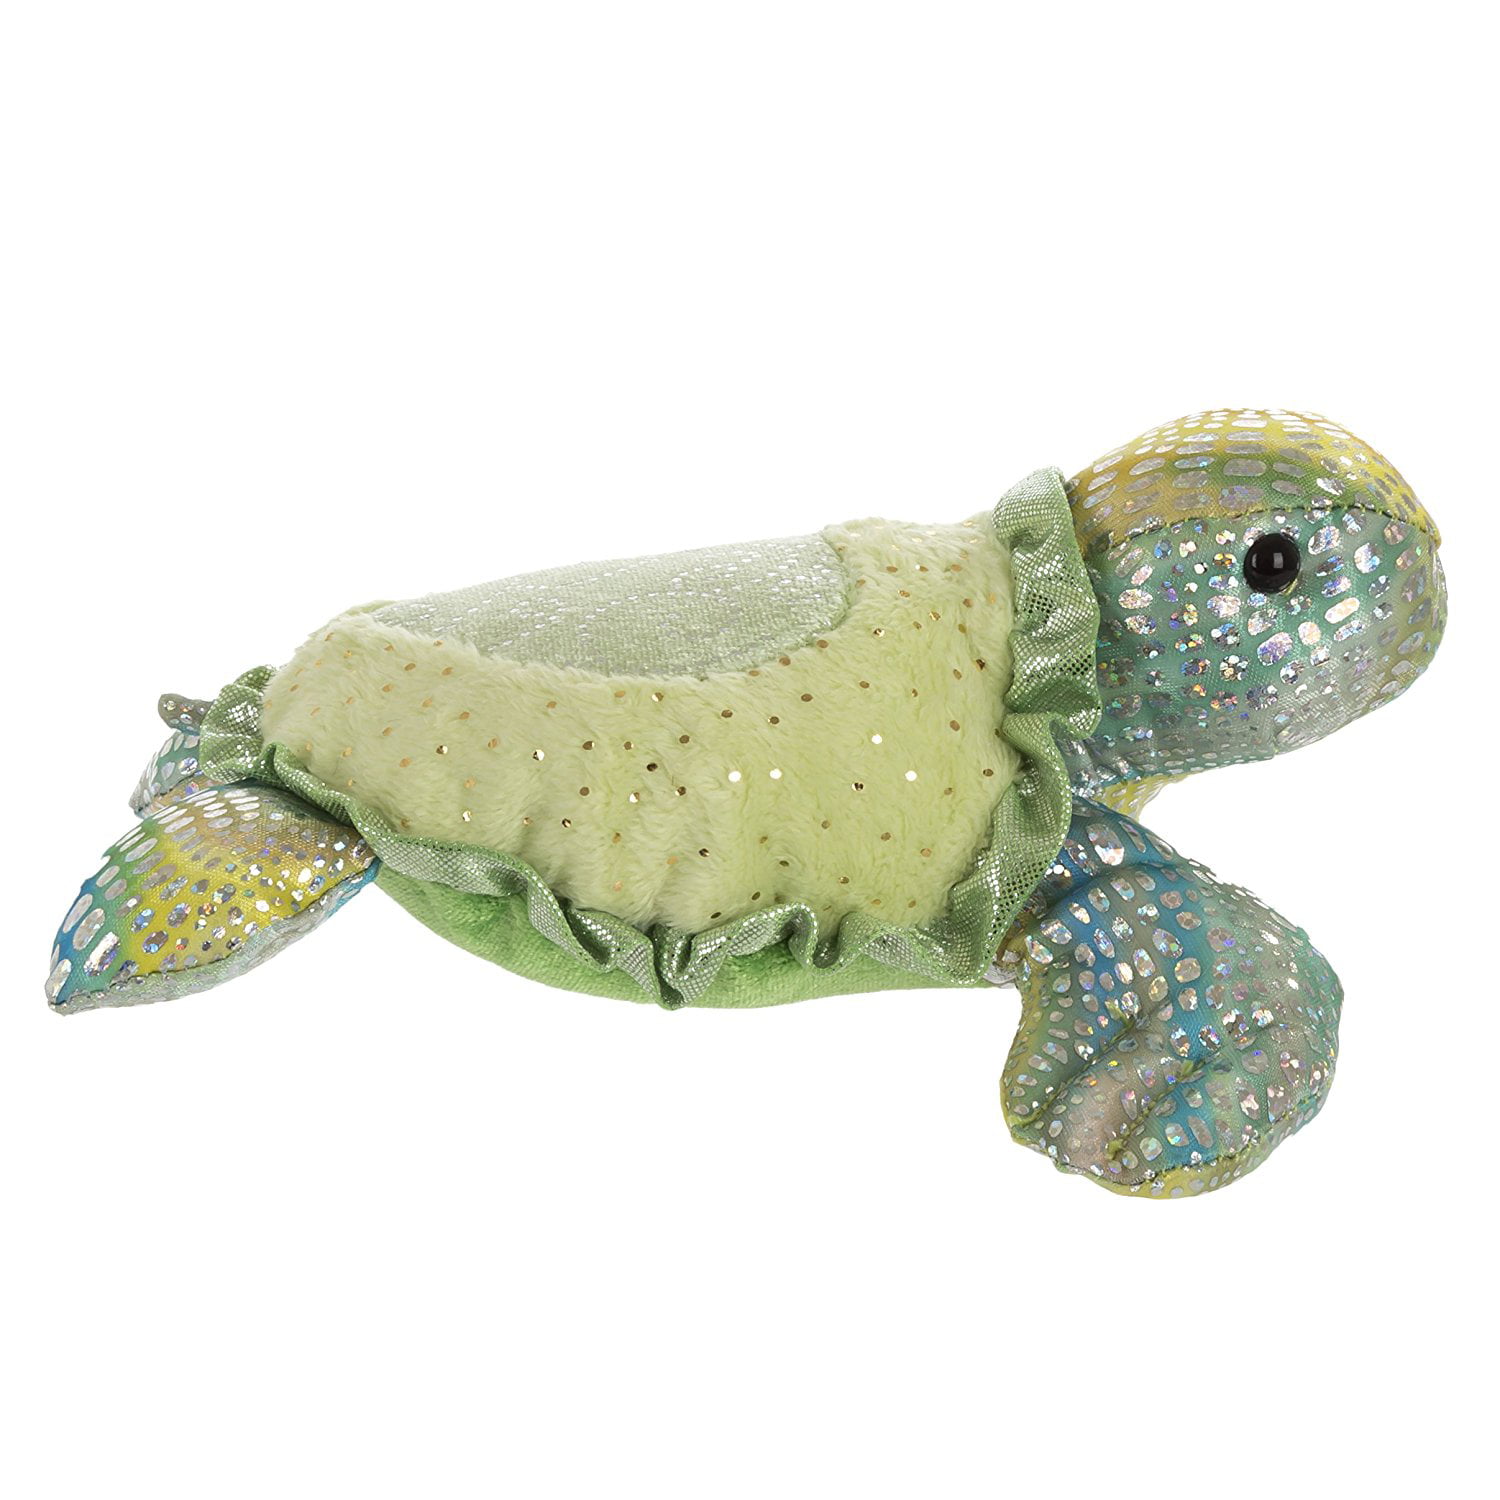 Aurora Tamara The Sea Turtle 7" Sea Sparkle #04127 Stuffed Animal Toy 